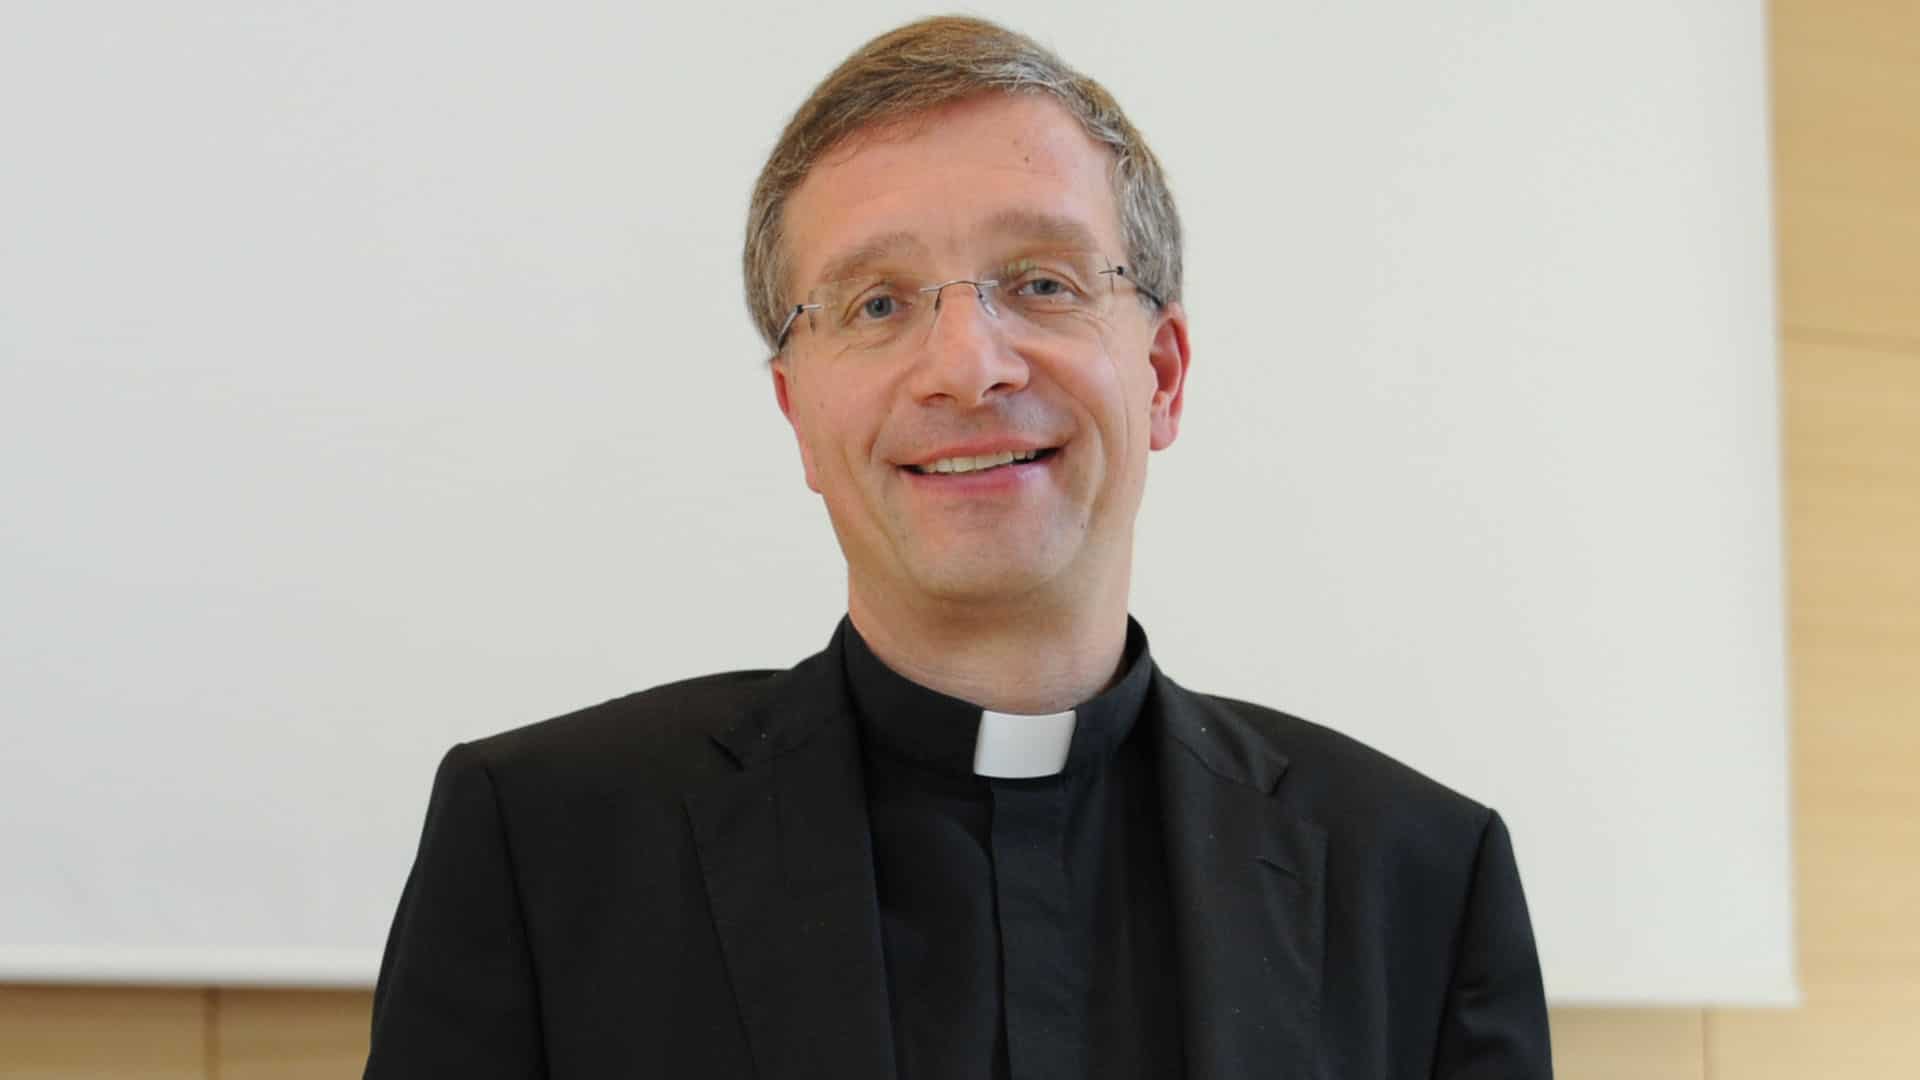 Bischof Michael Gerber vom Bistum Fulda: Menschen finden zur Kirche durch das Evangelium